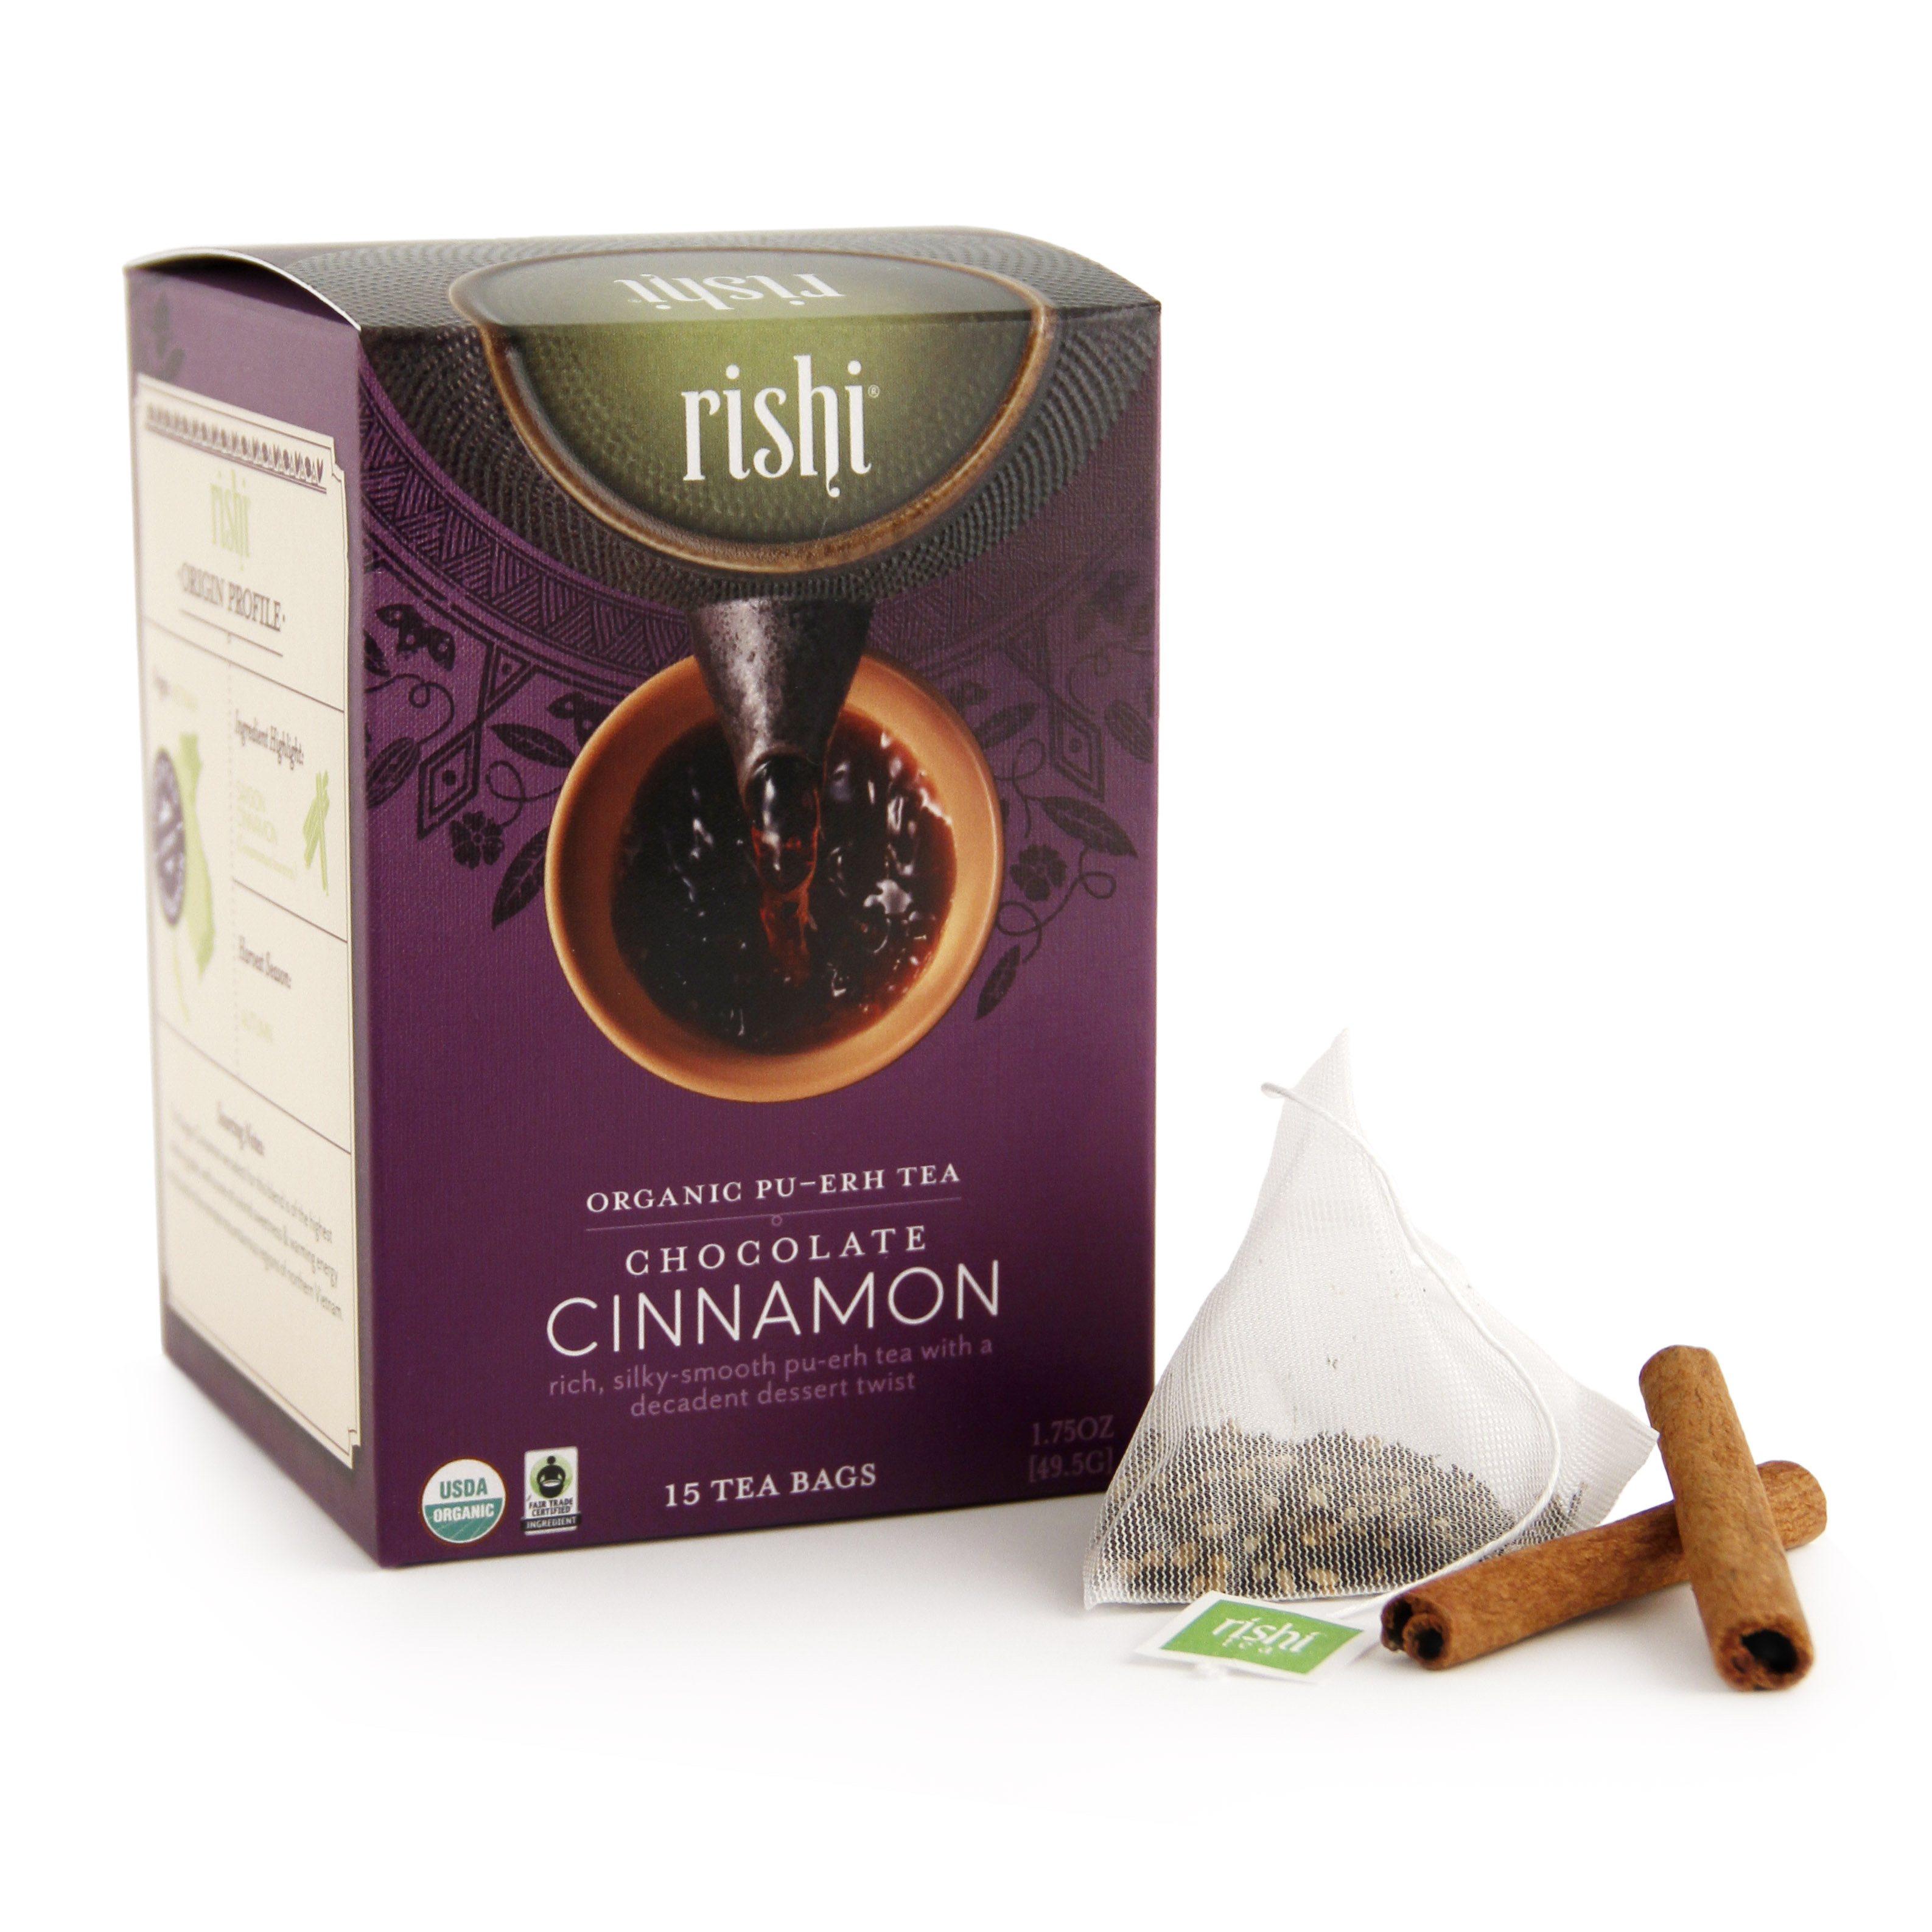 Rishi Organic Pu-erh Tea, Chocolate Cinnamon